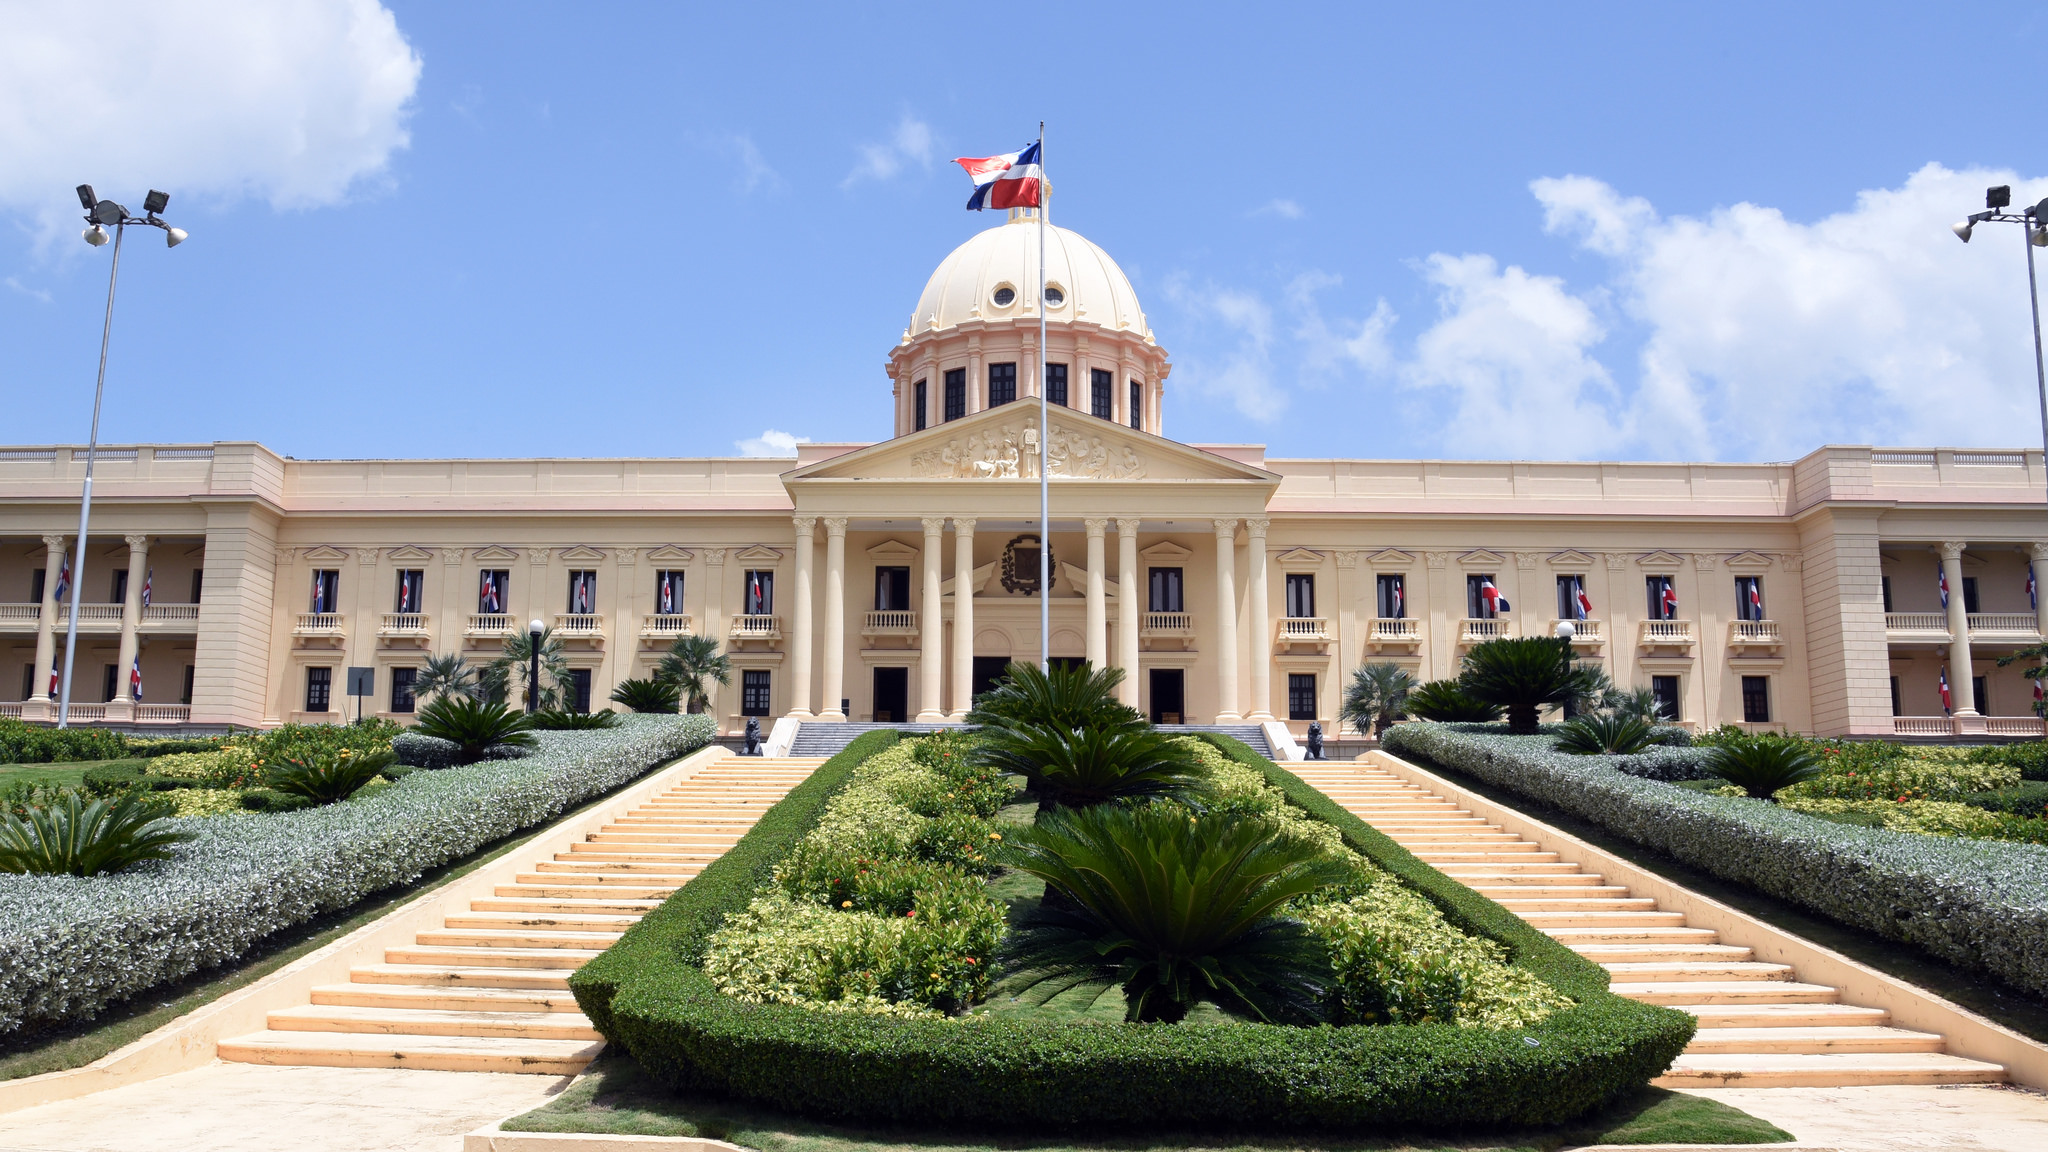 REPÚBLICA DOMINICANA: Presidente Danilo Medina promulga Ley 340-19, establece régimen de incentivo y fomento del mecenazgo cultural en República Dominicana